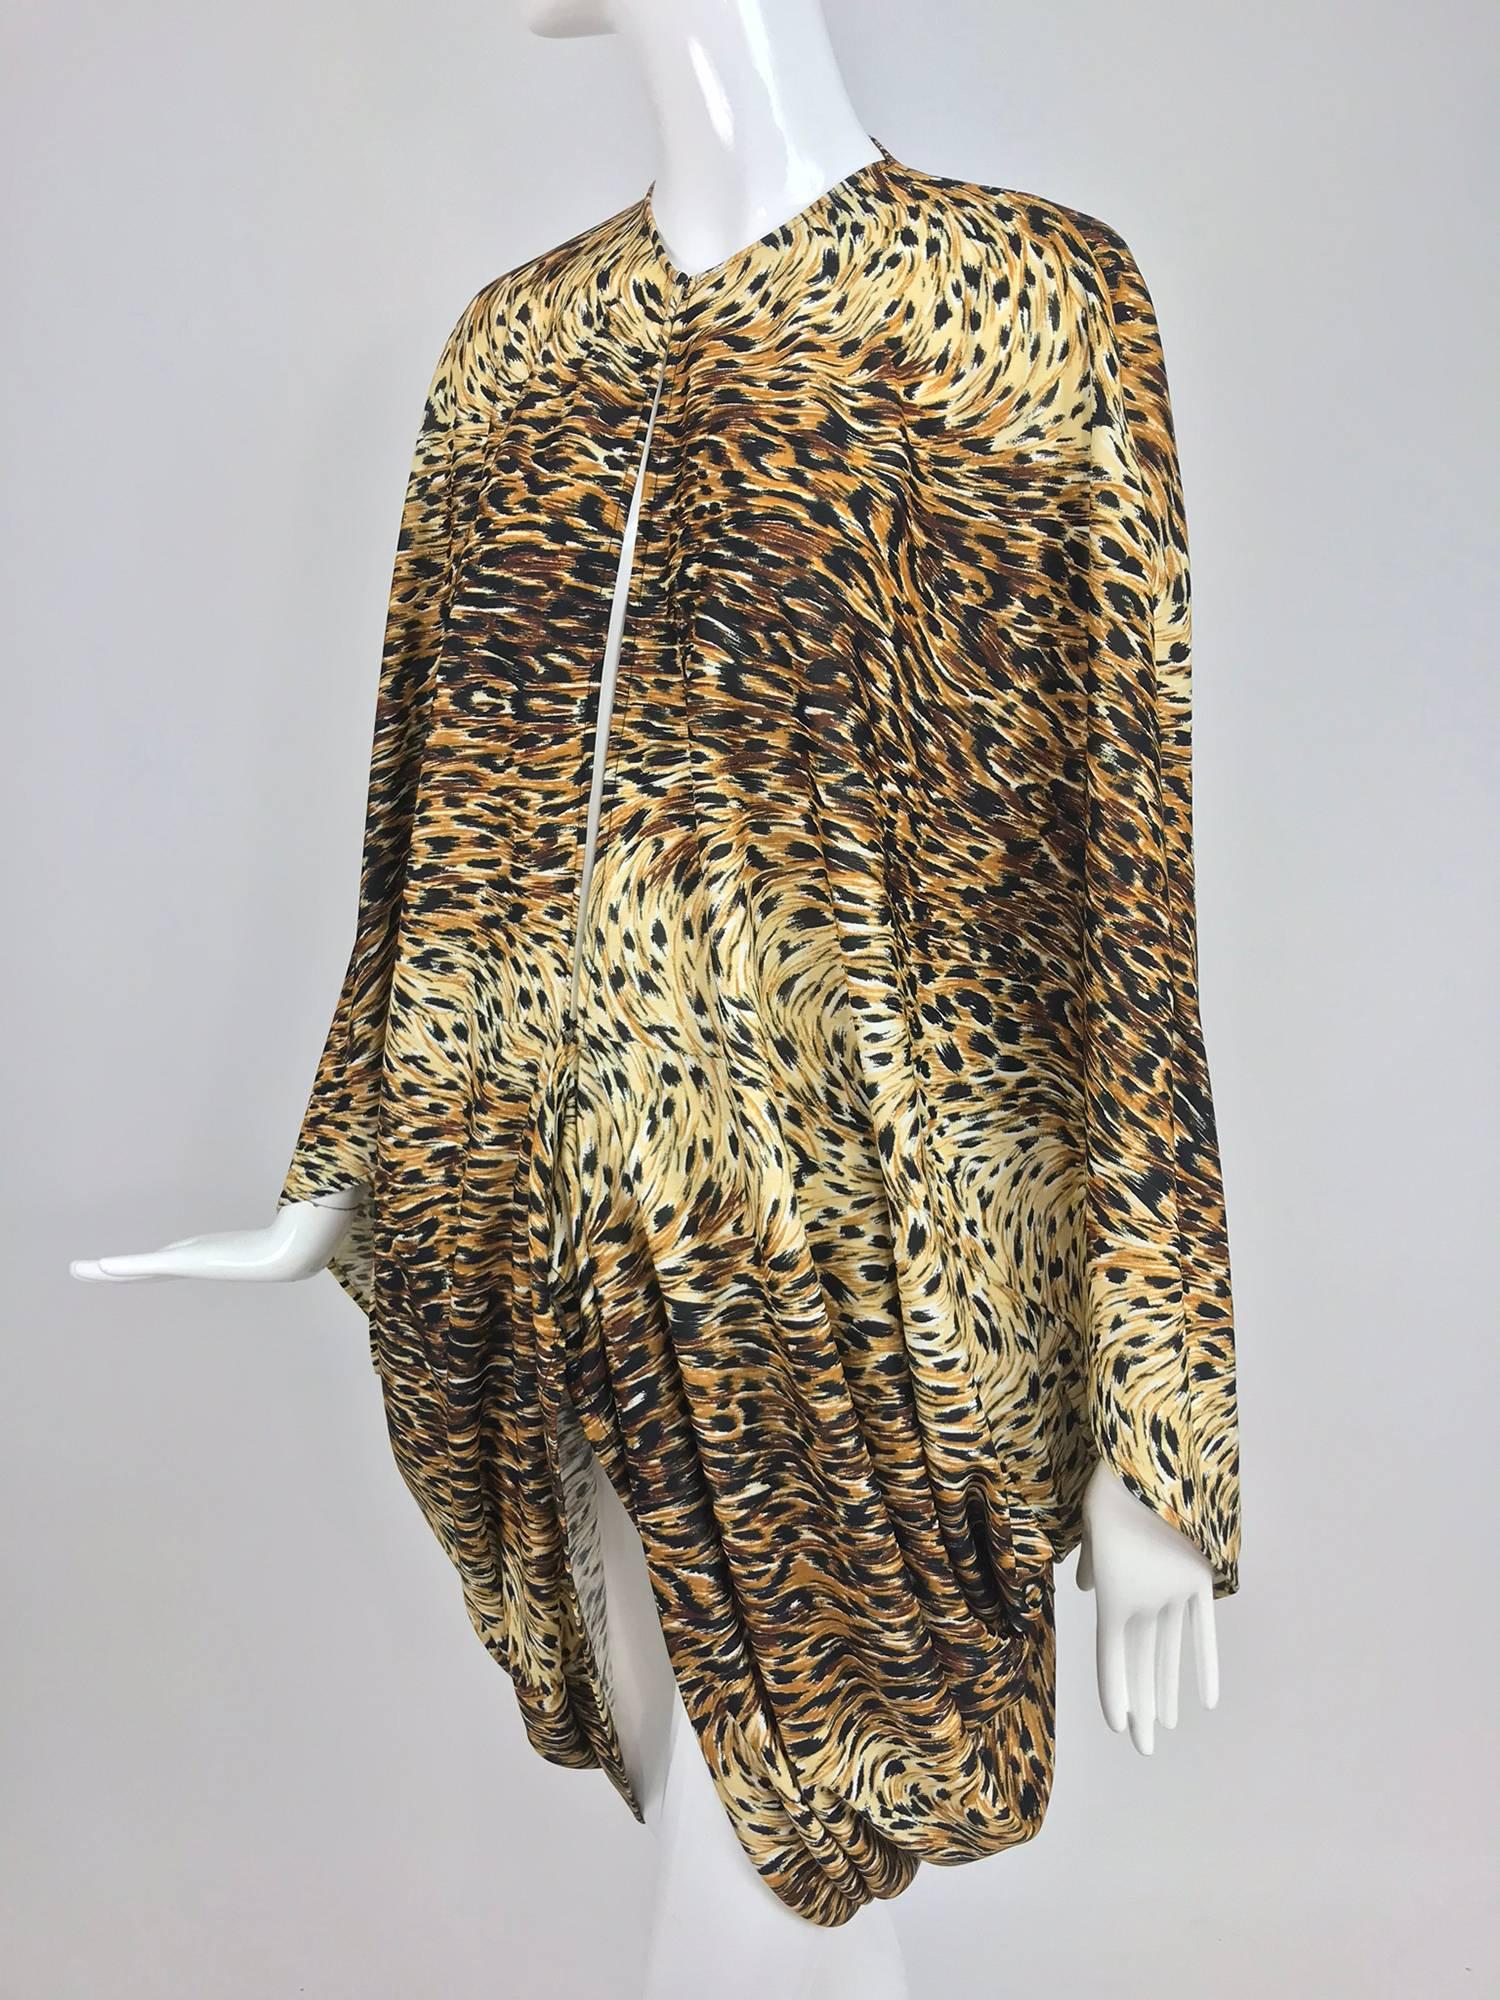 Norma Kamali OMO Leopardenmuster-Kokonjacke aus den 1980er Jahren. Ungefütterte Nylon/Elasthan-Jersey-Kokonjacke, die vorne mit Haken und Ösen geschlossen wird. Drapierte Form mit Armausschnitten, im Rücken länger. Passt auf eine kleine oder